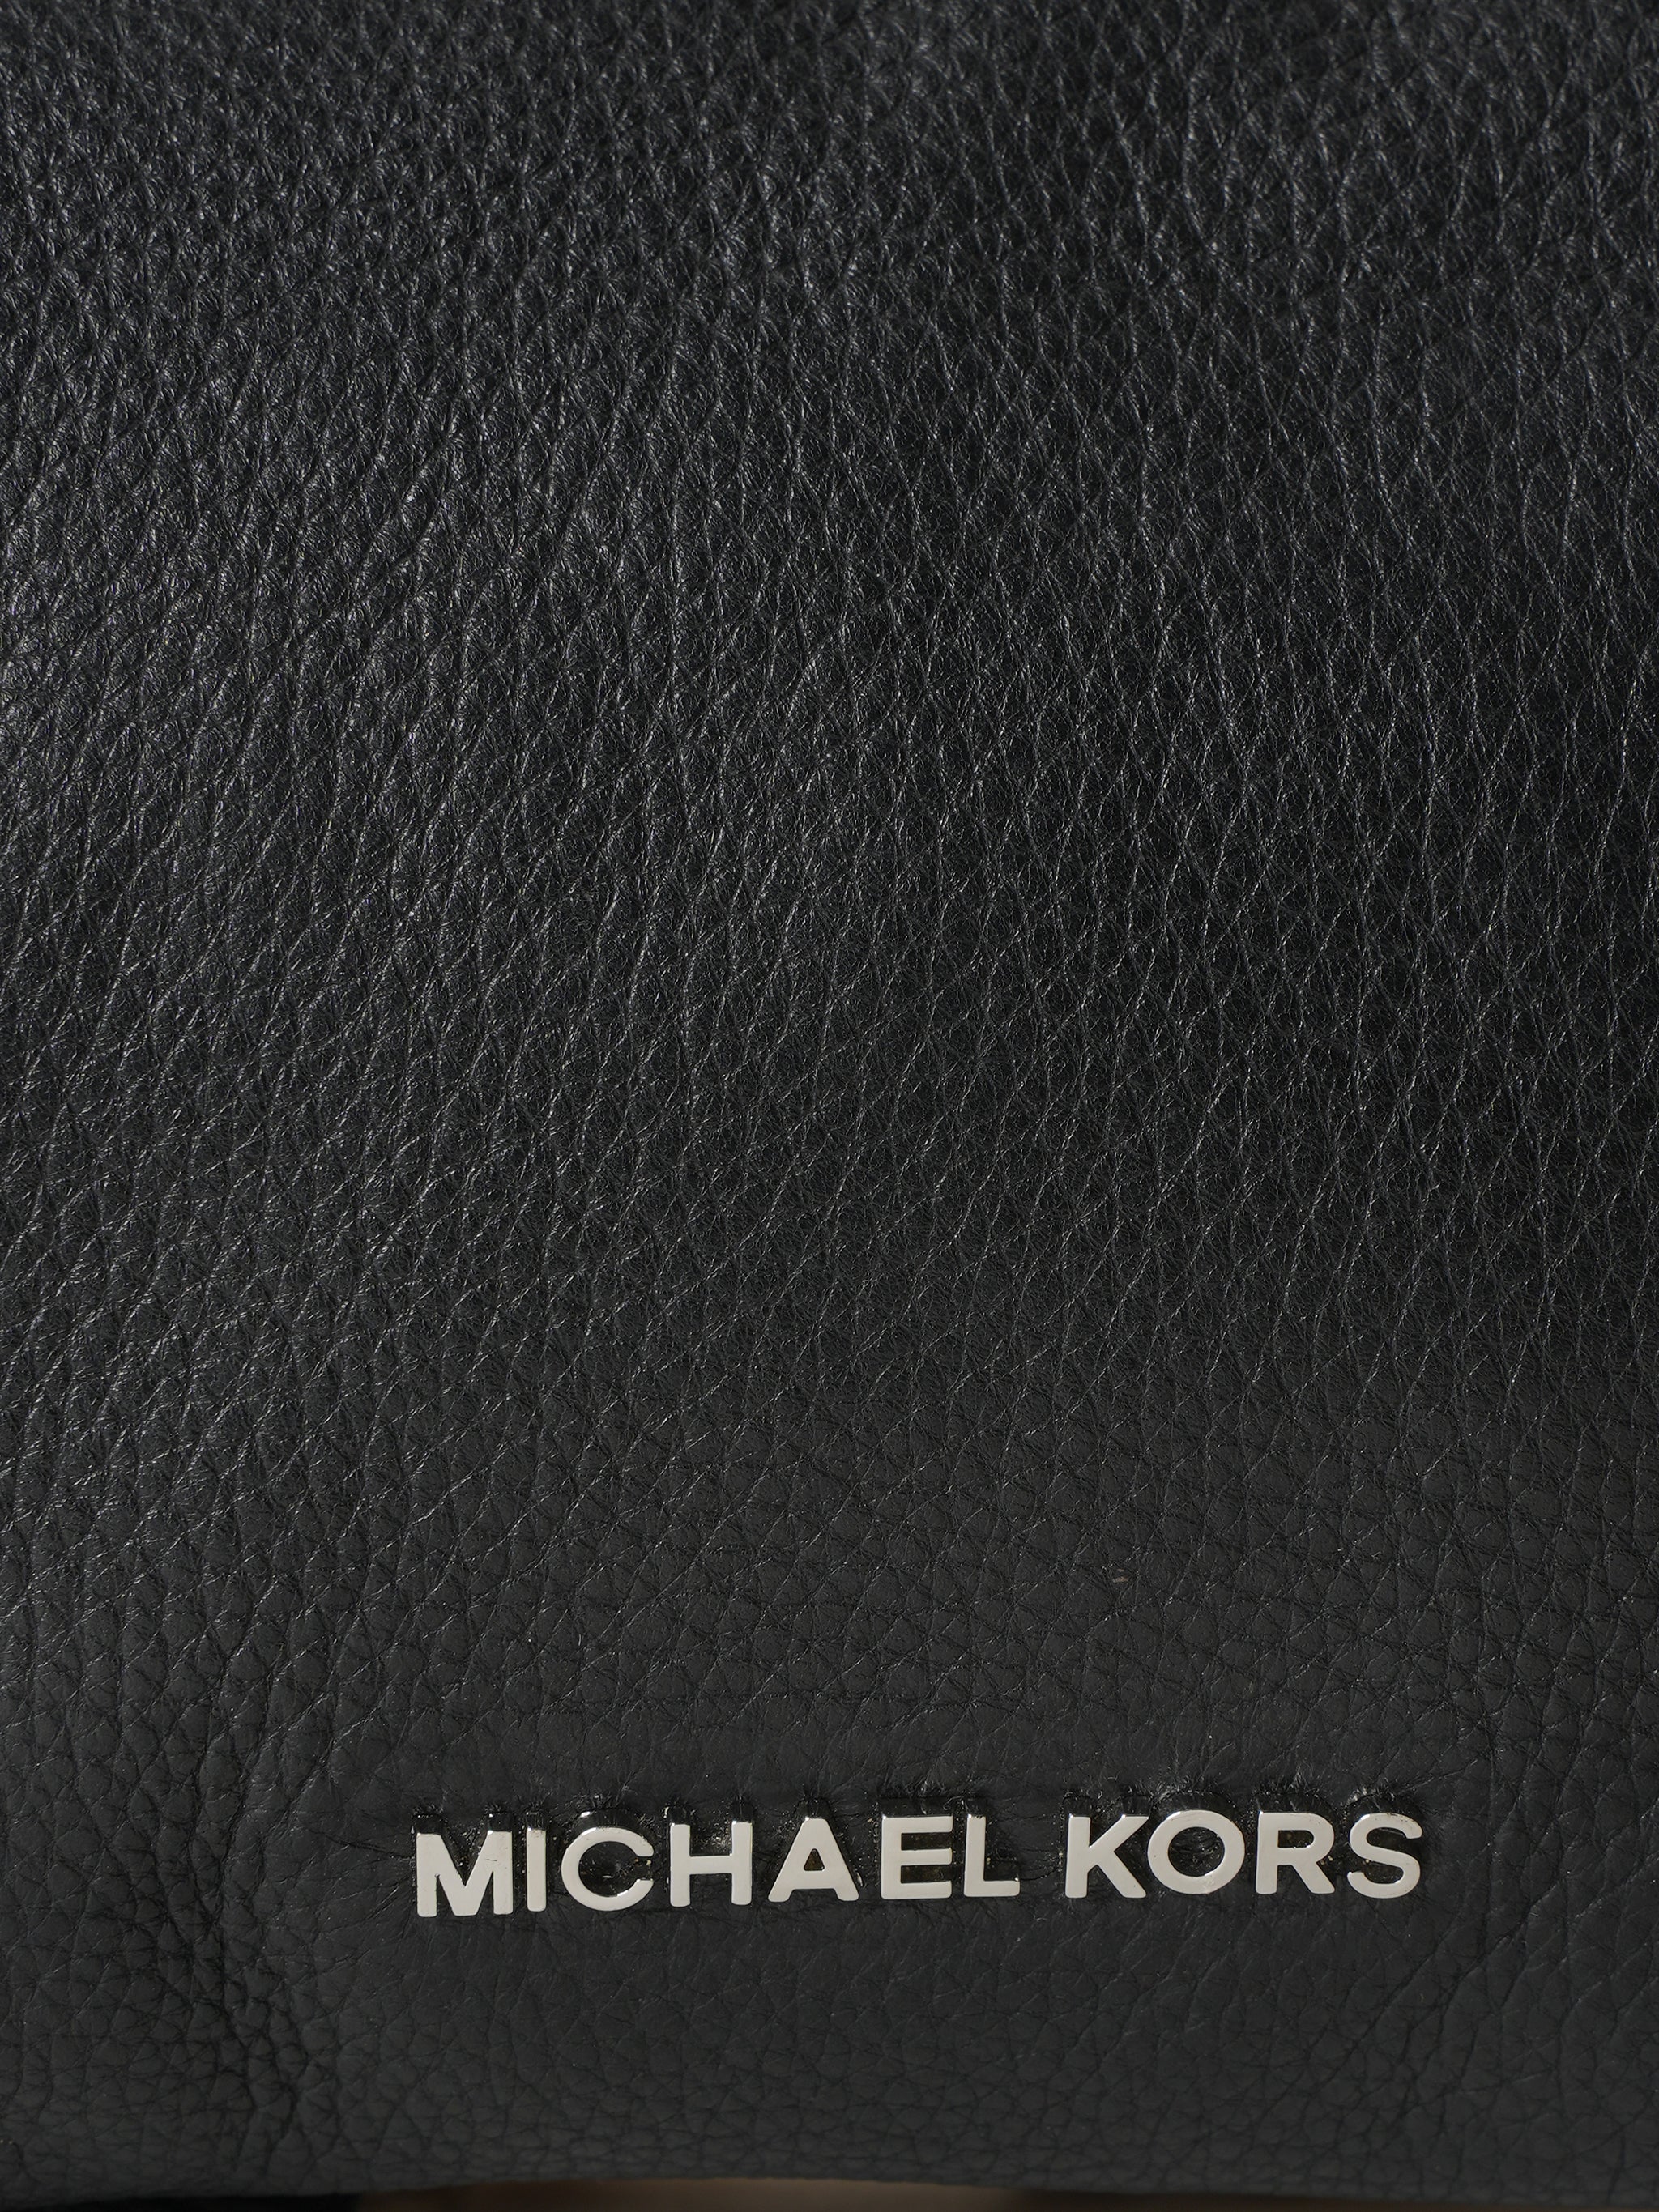 Michael Kors foldable shoulder bag